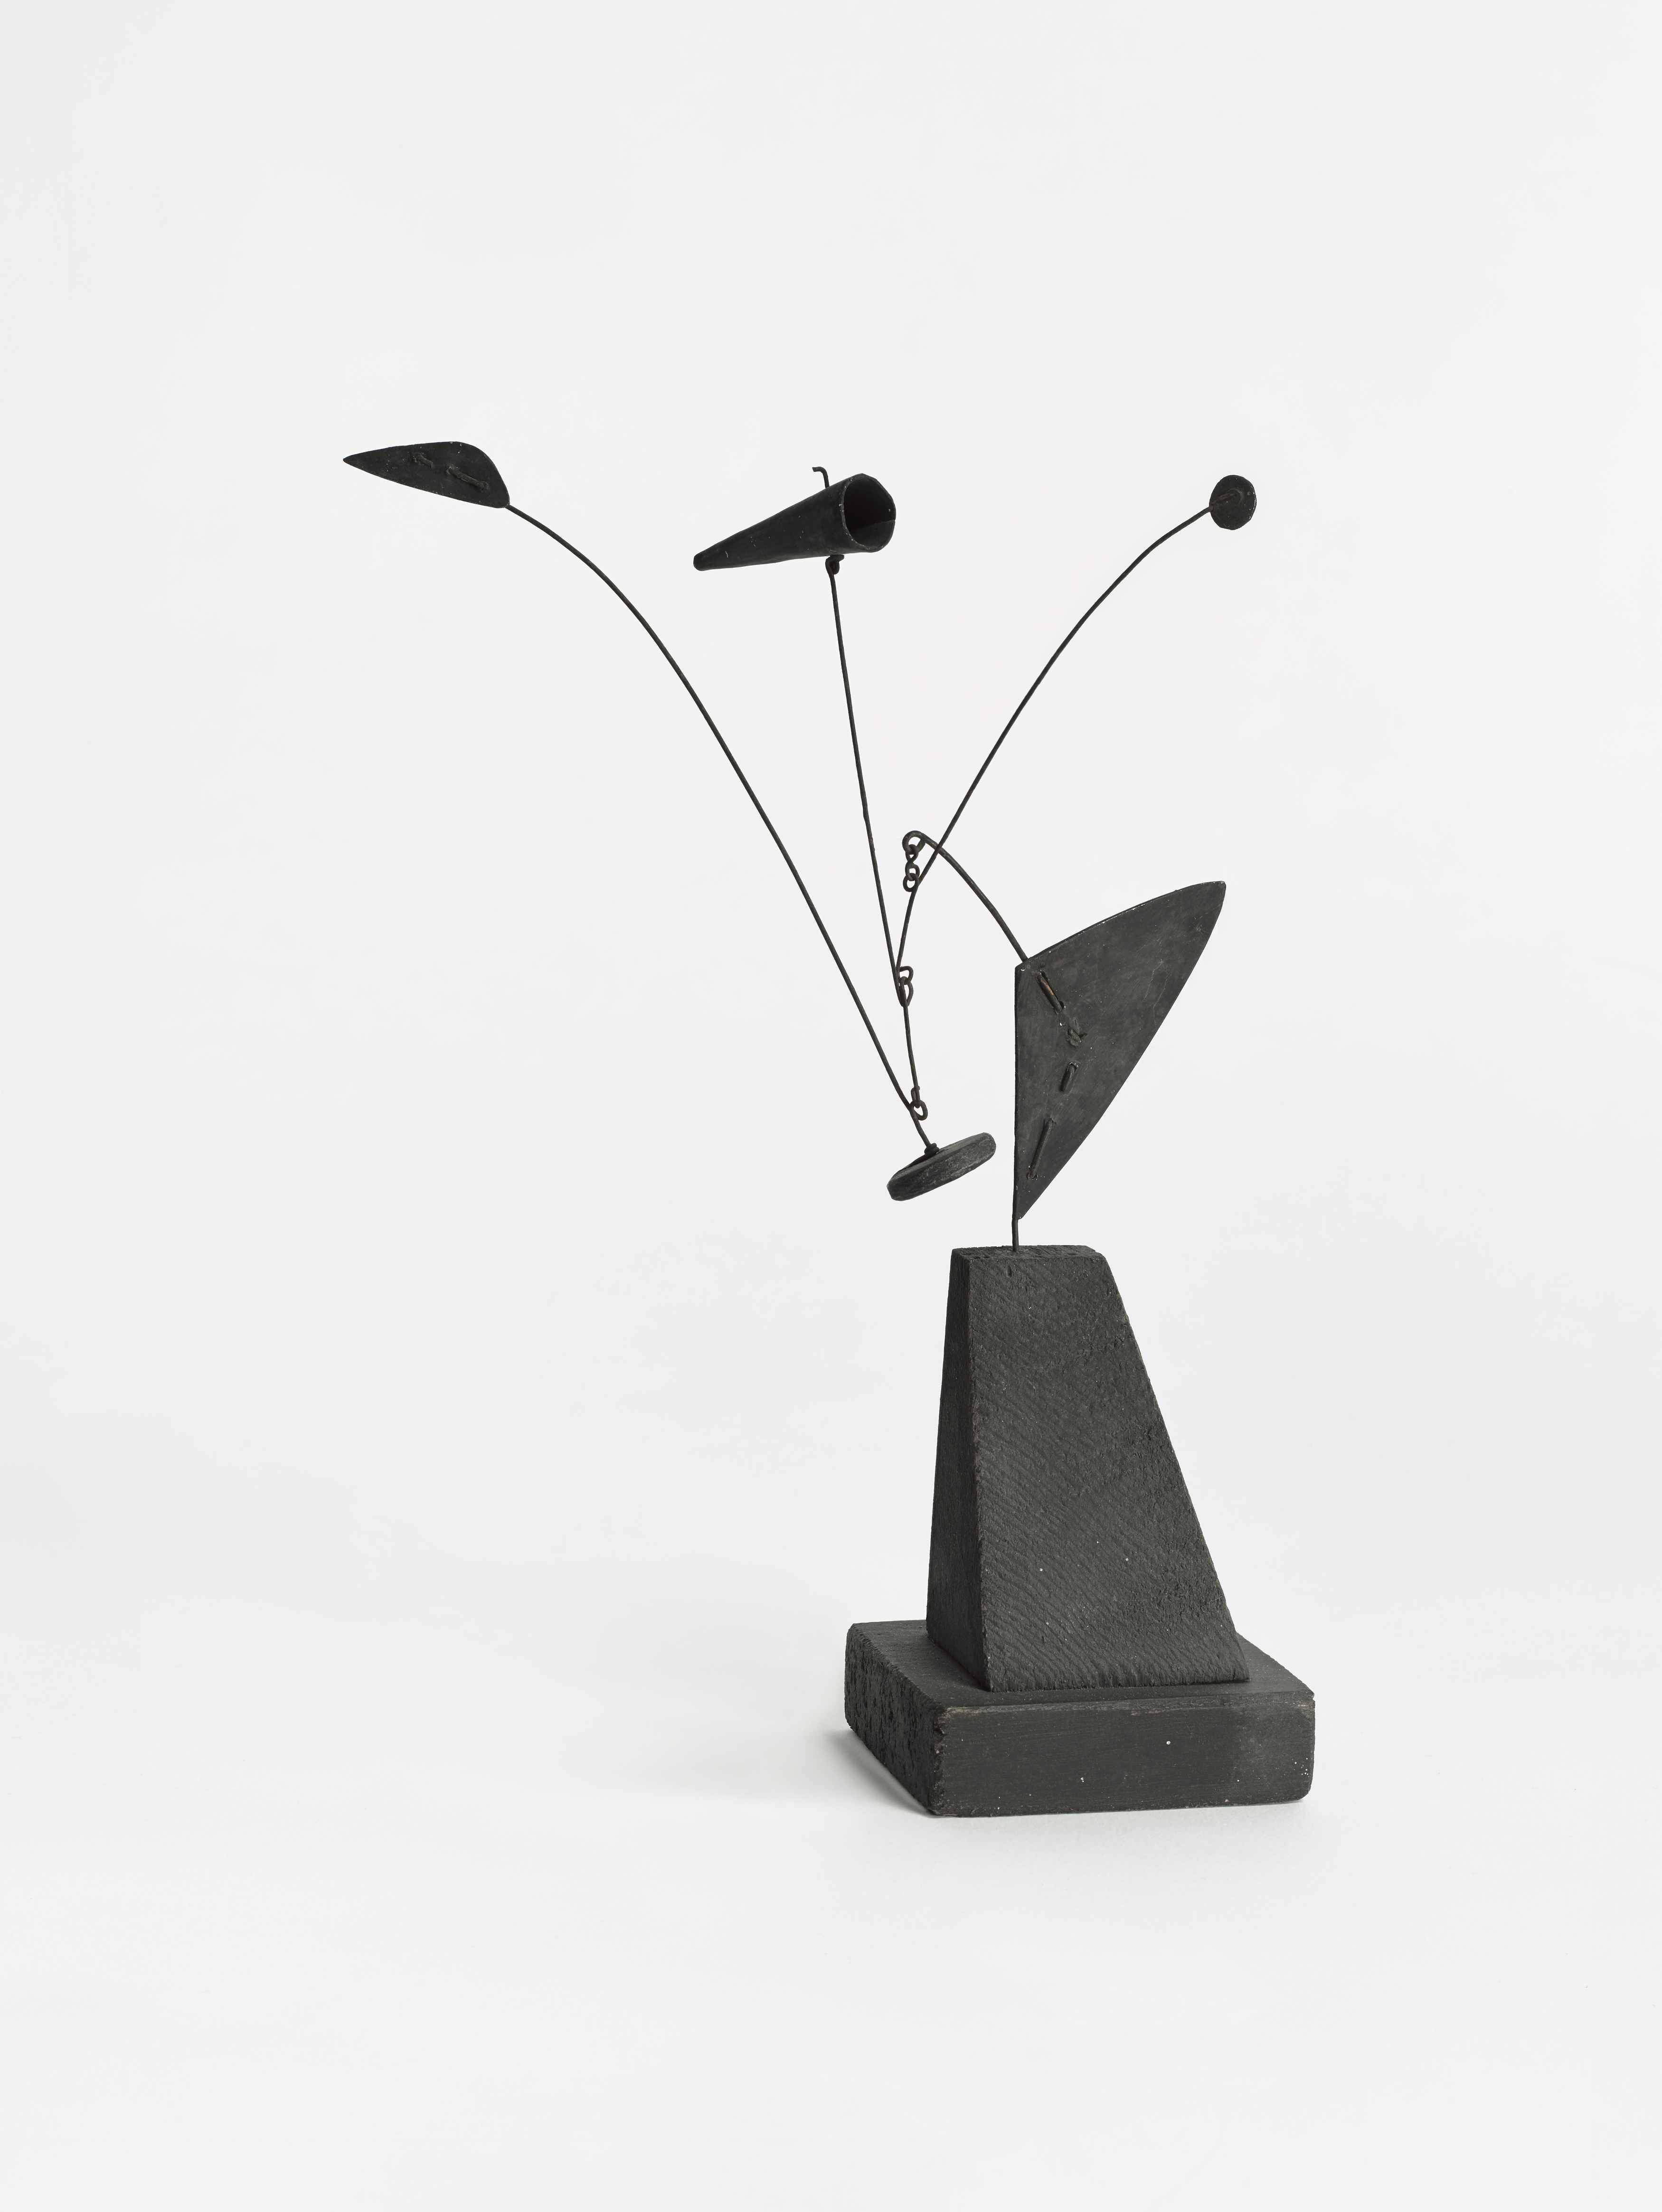 Alexander Calder. Untitled (maquette), 1939 Â© 2019 Calder Foundation, New York / VEGAP, Santander